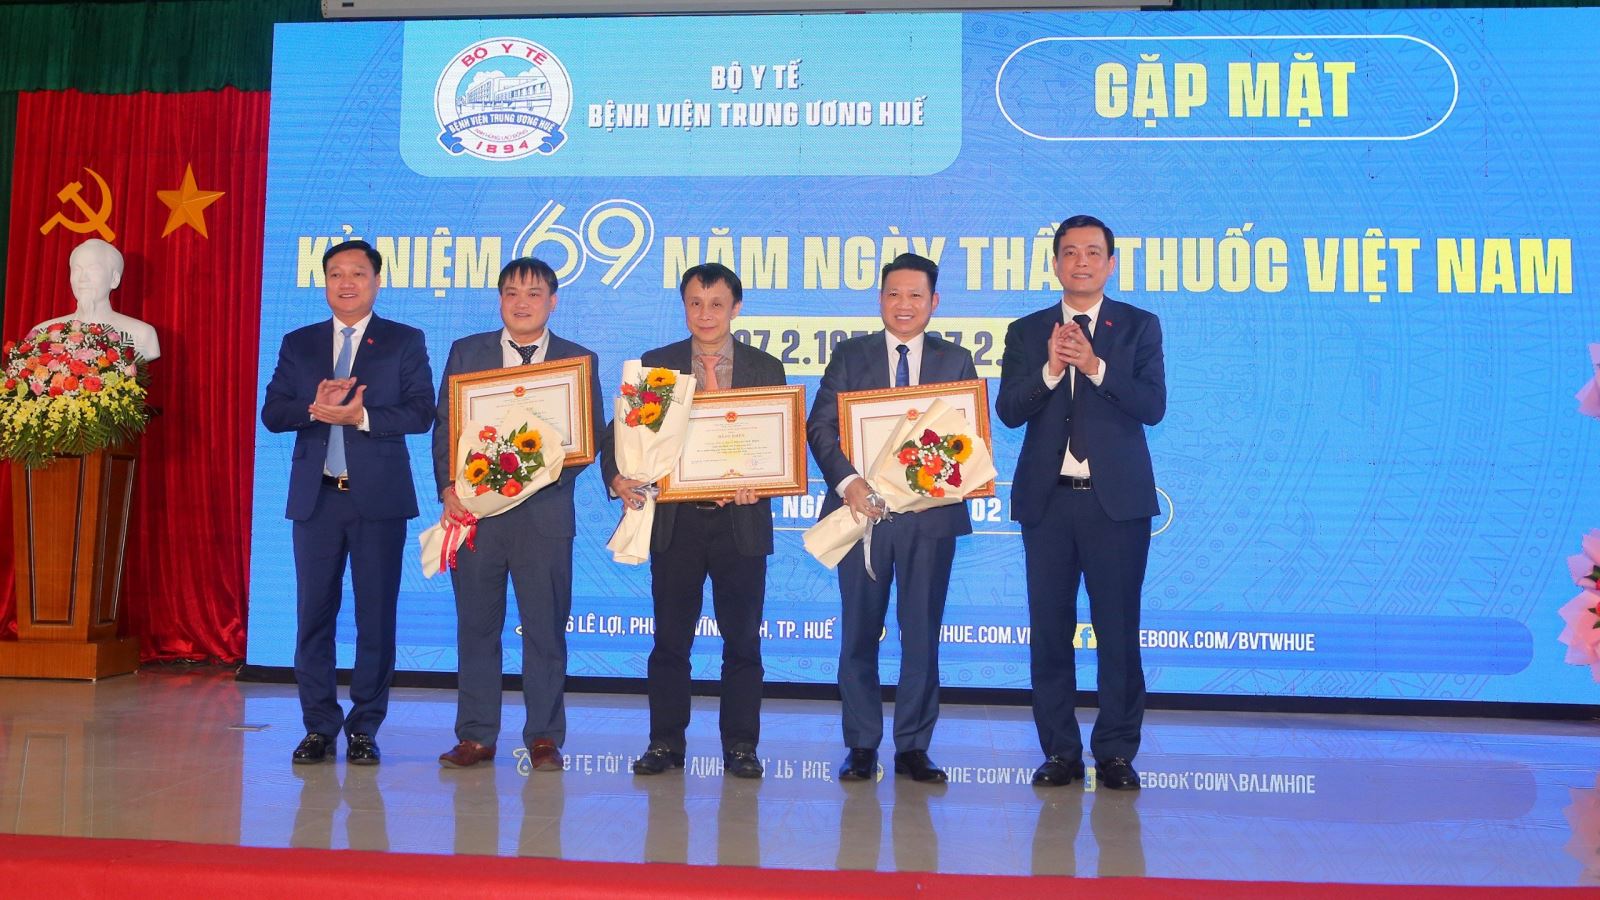 Nhiều bác sĩ bệnh viện có thành tích xuất sắc đã được trao tặng danh hiệu Chiến sĩ thi đua của Bộ Y tế  và nhận Bằng khen UBND tỉnh Thừa Thiên Huế.